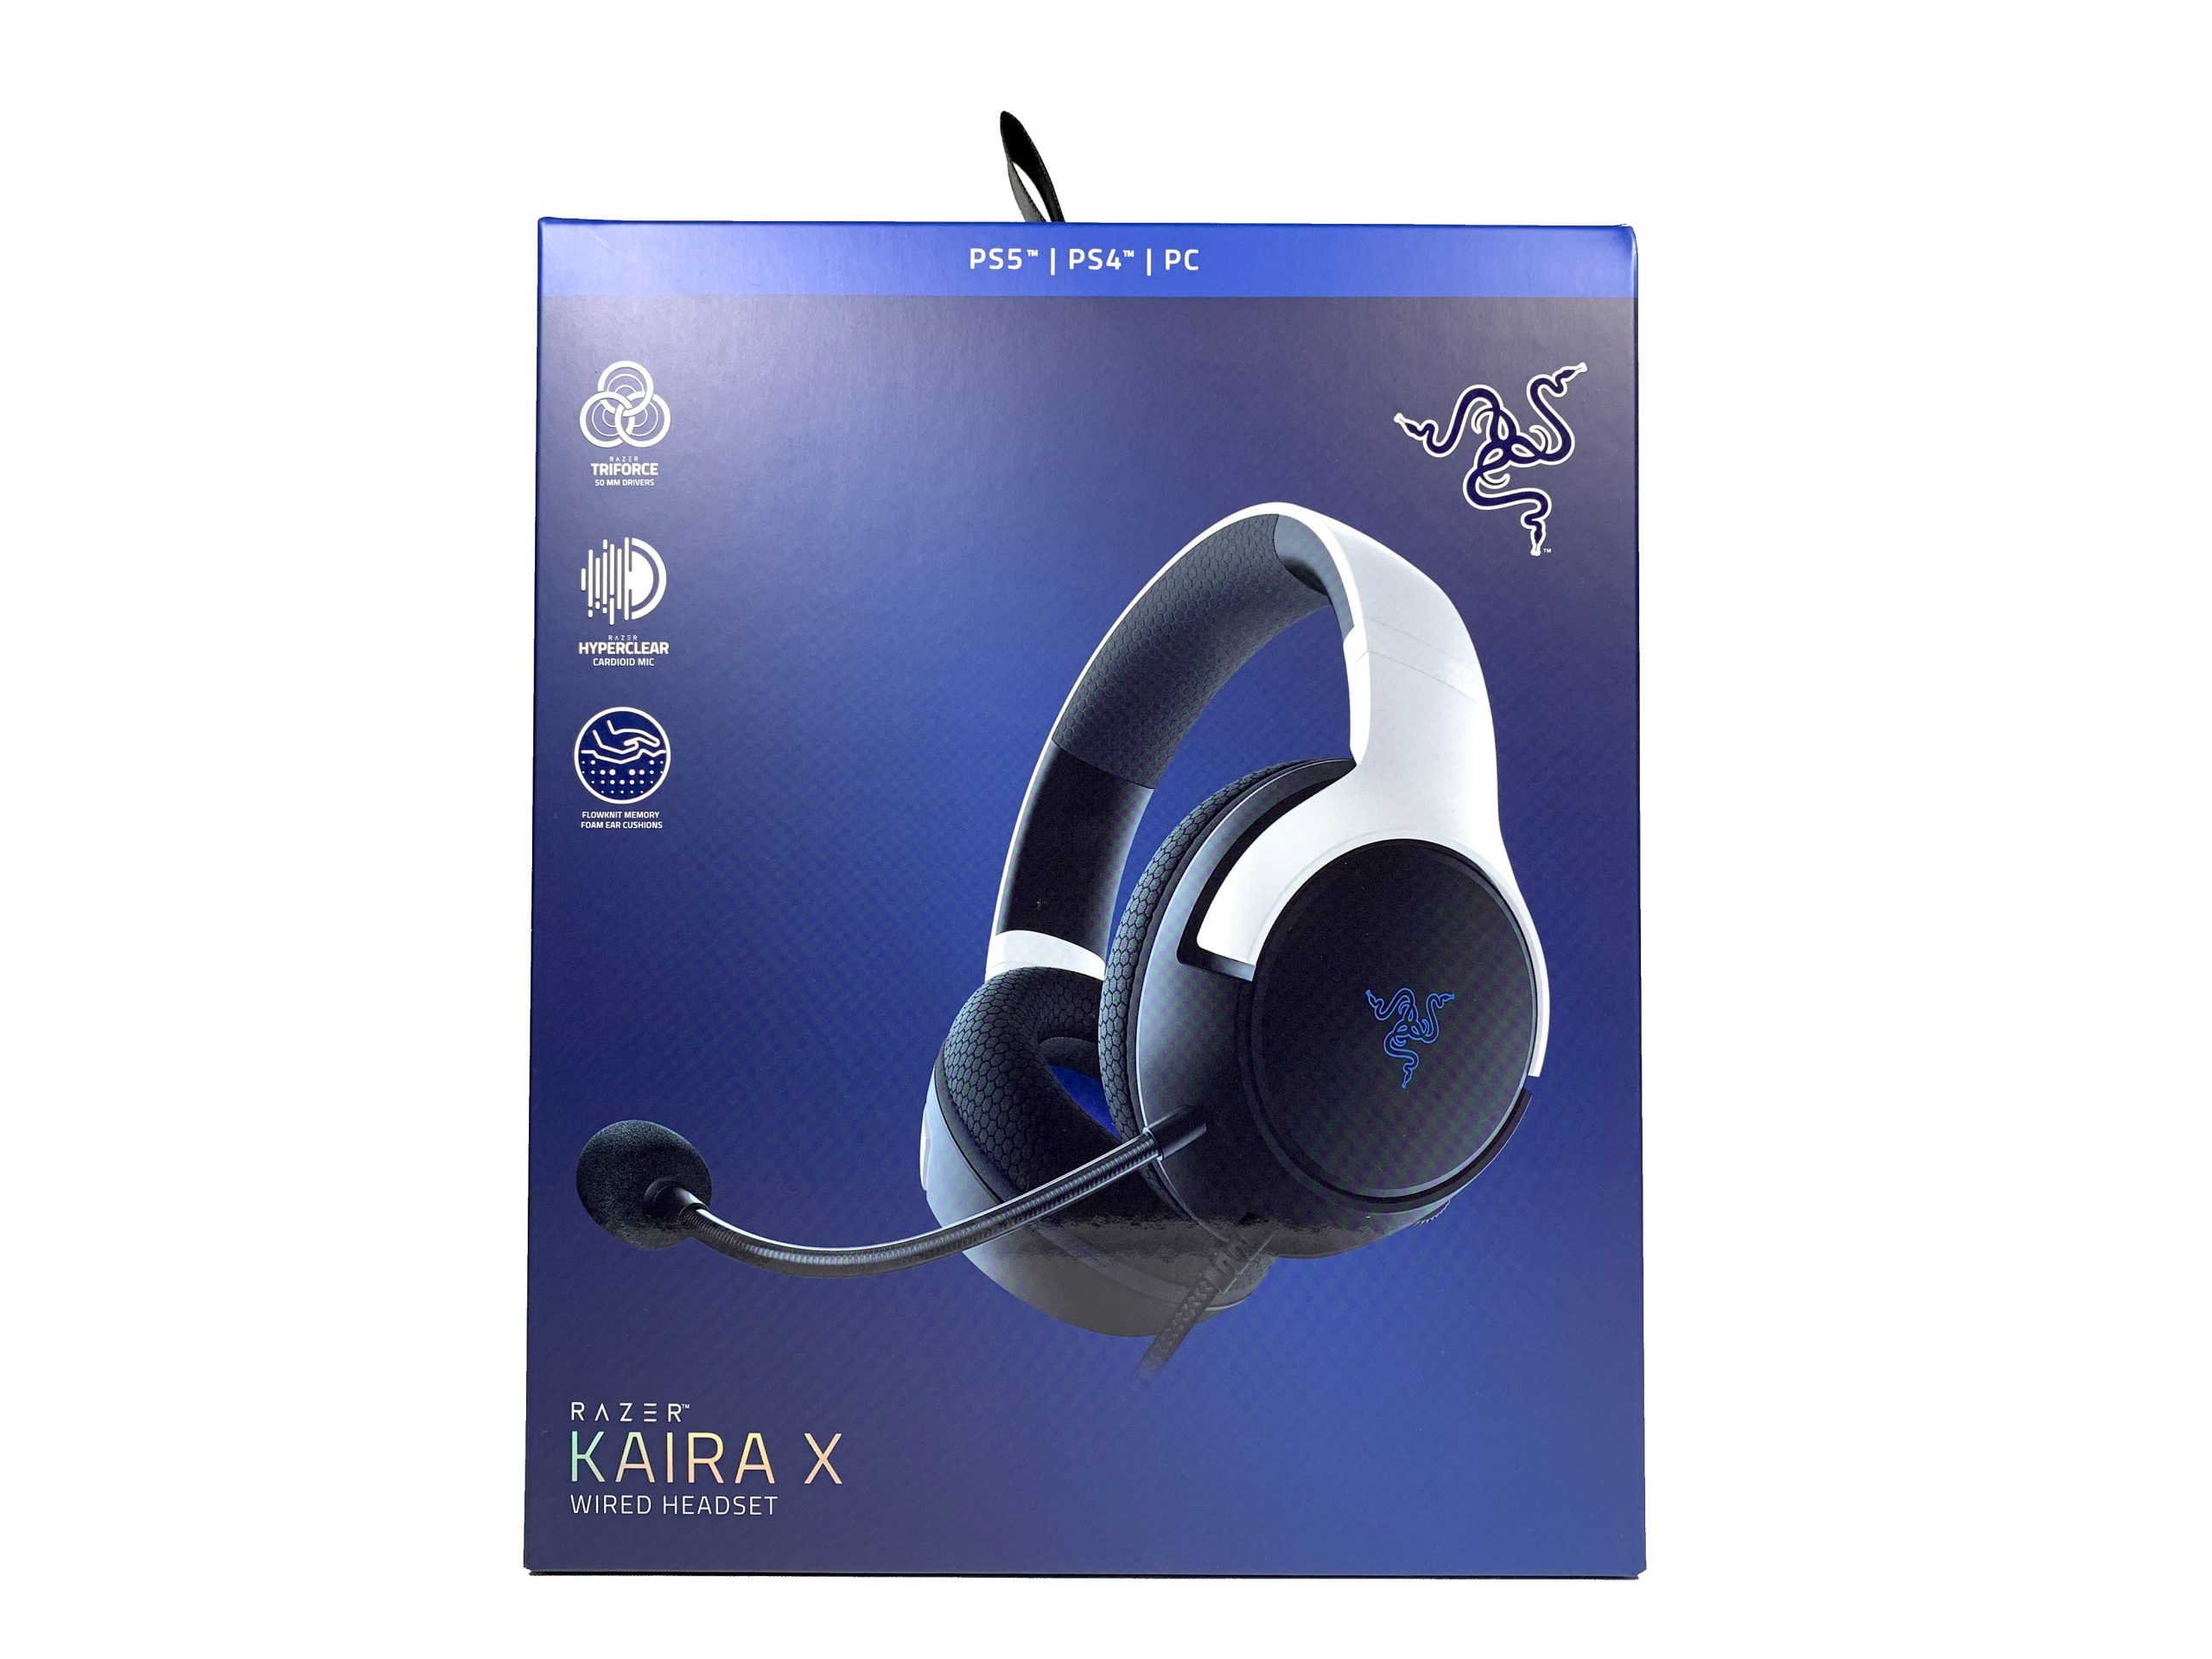 レビュー】Razer Kaira X for PlayStation～PS5向けの有線ヘッドセット～